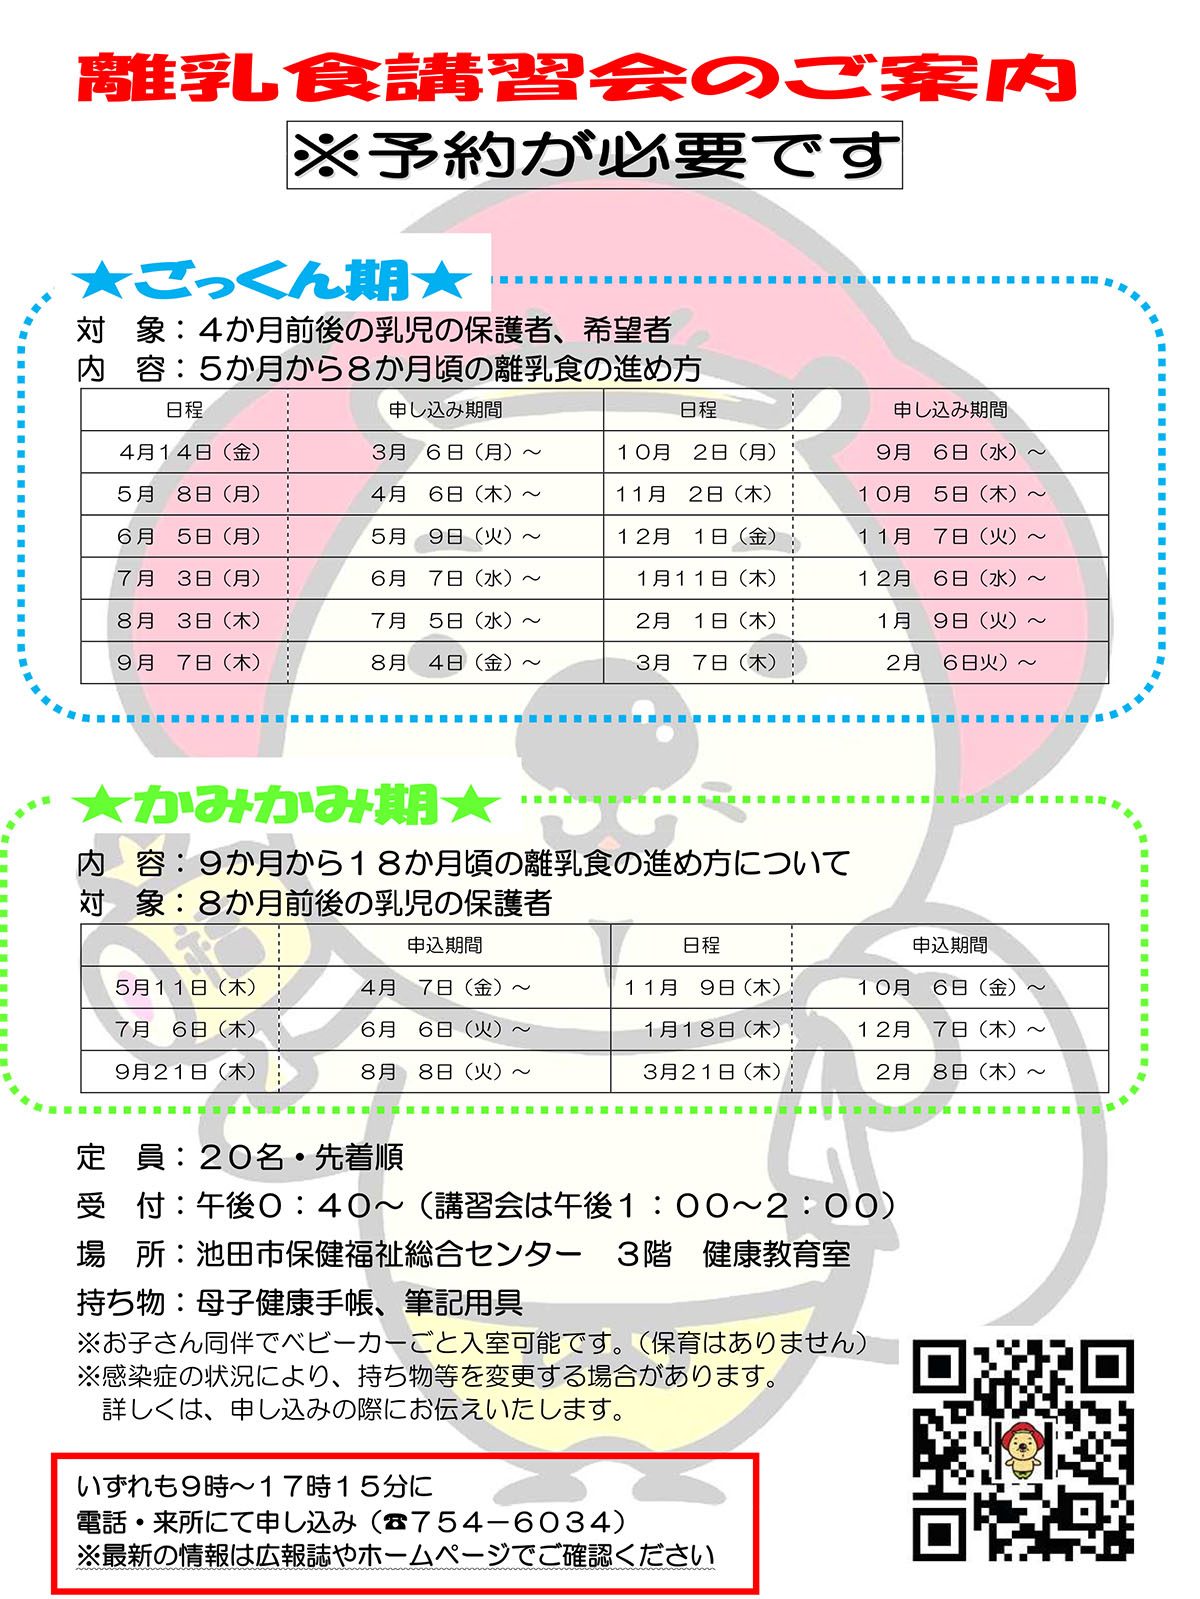 【予約制】離乳食講習会 8月3日開催ごっくん期